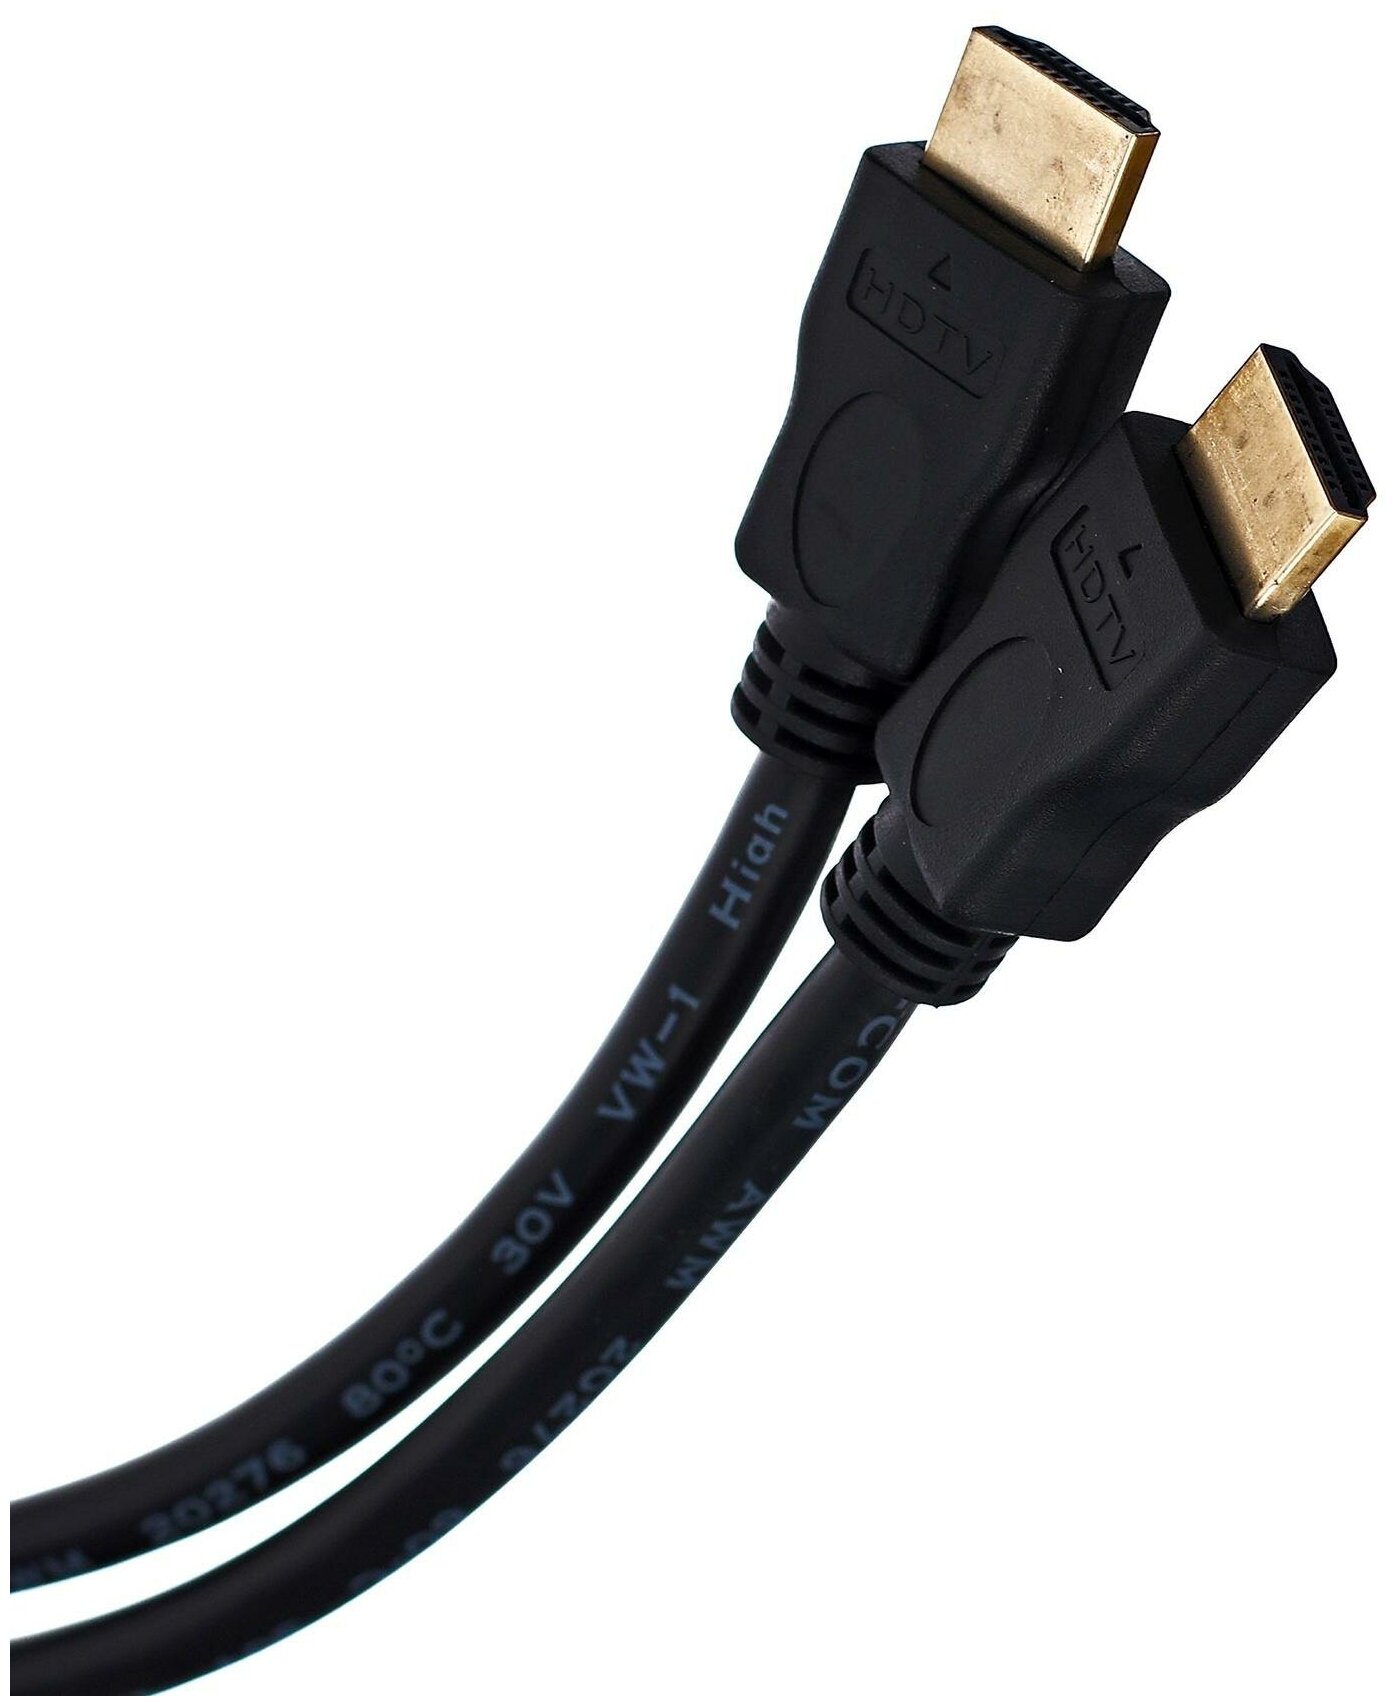 Кабель HDMI 5м VCOM Telecom CG150S-5M круглый черный